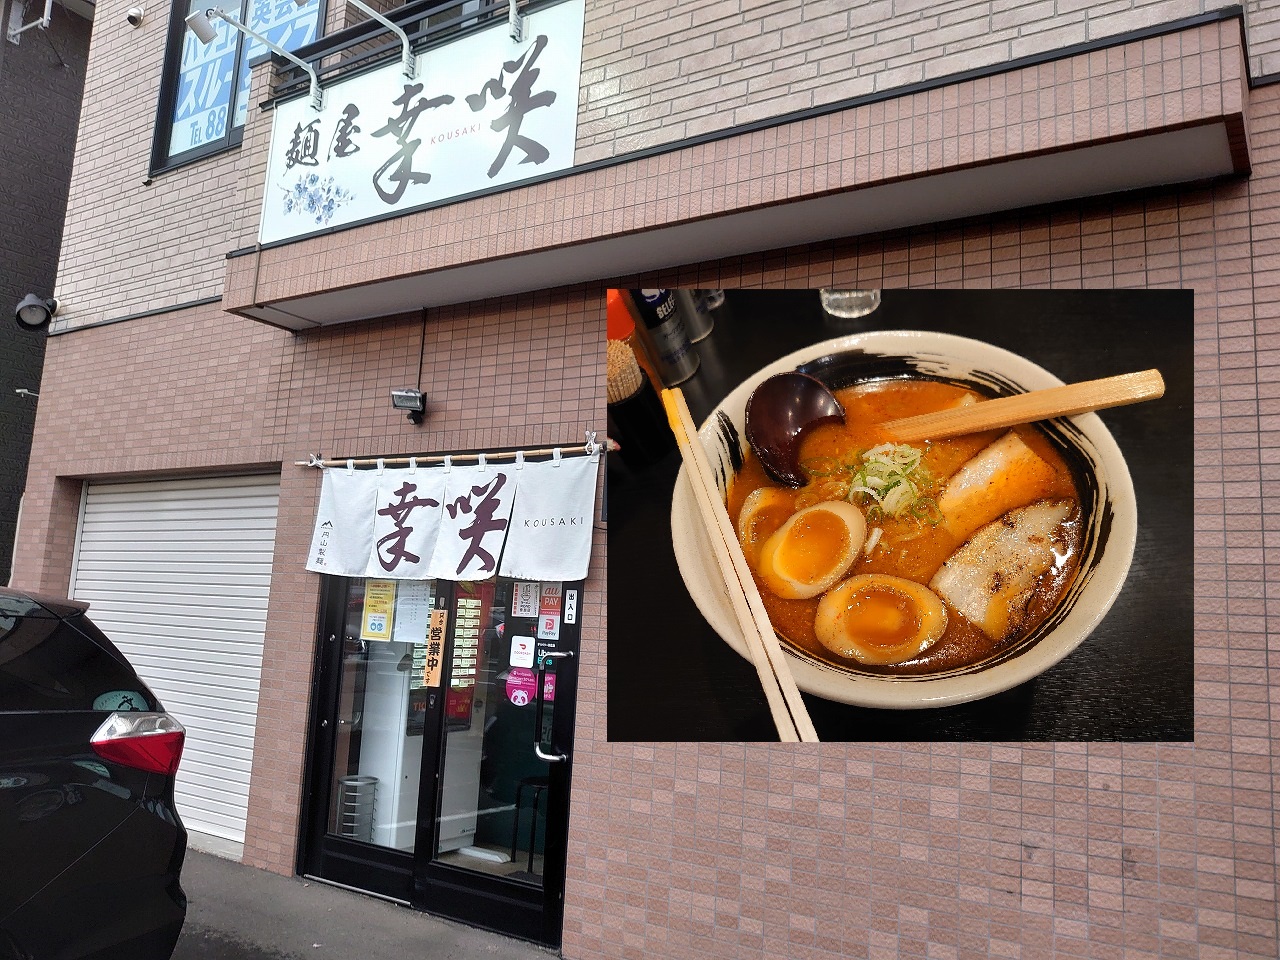 札幌で昼食をとってみた~その19~麺屋 幸咲